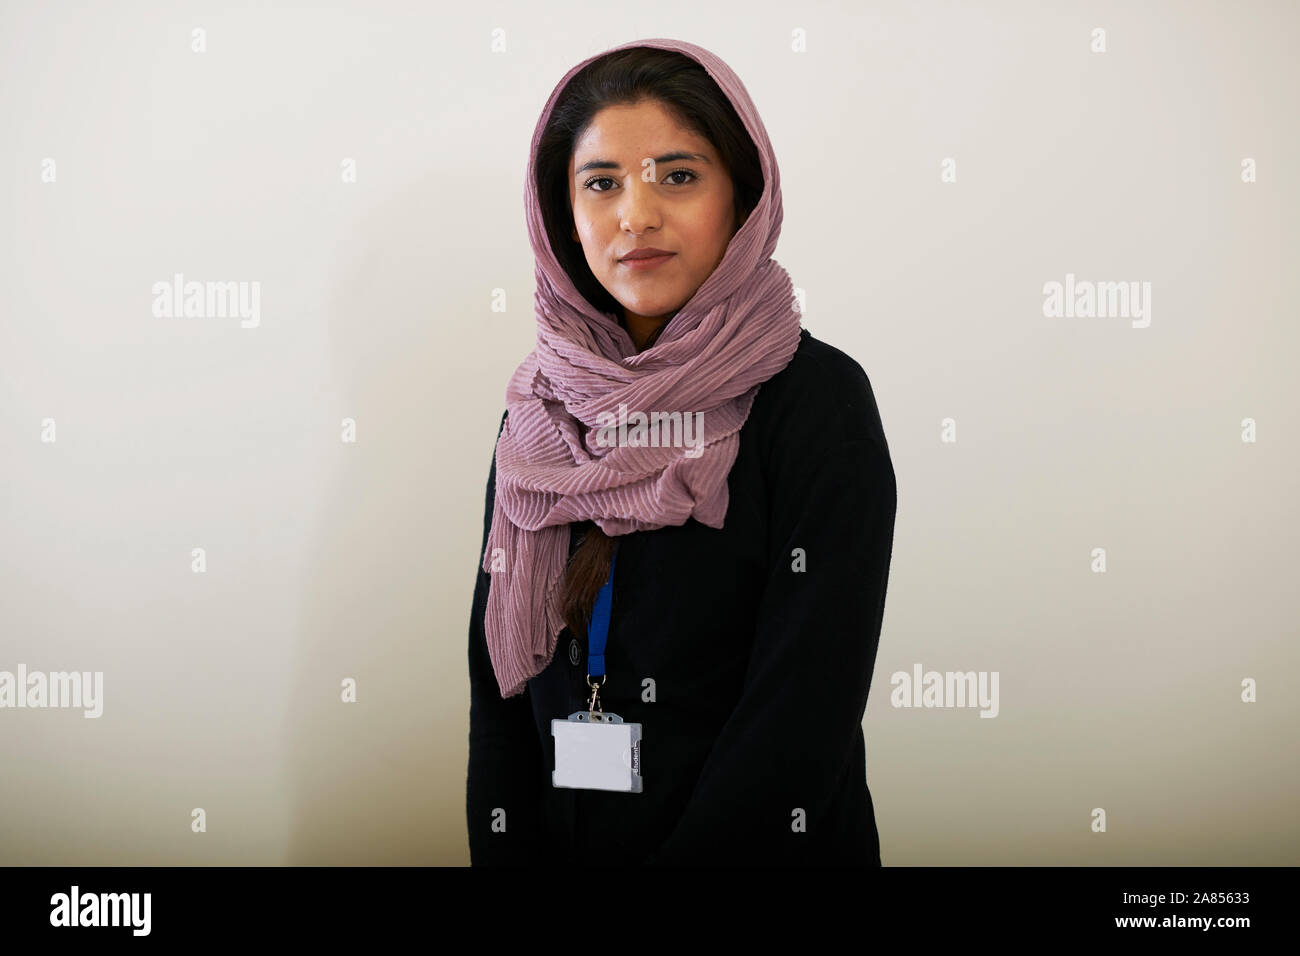 Confiant Portrait young woman wearing hijab Banque D'Images